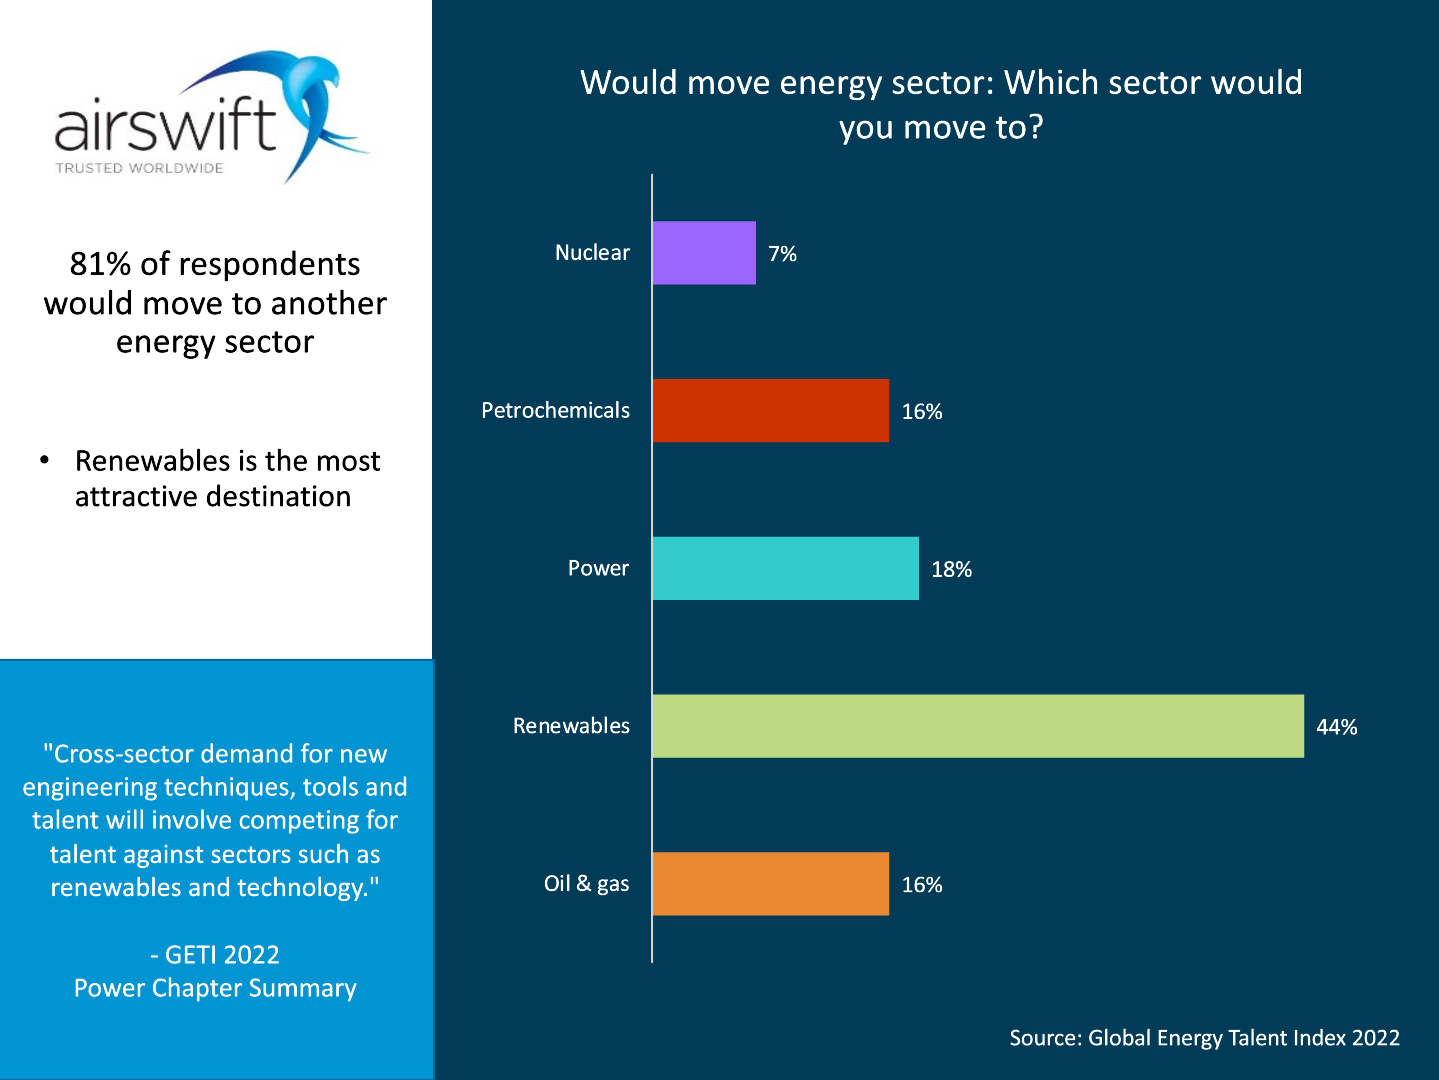 Energy sectors